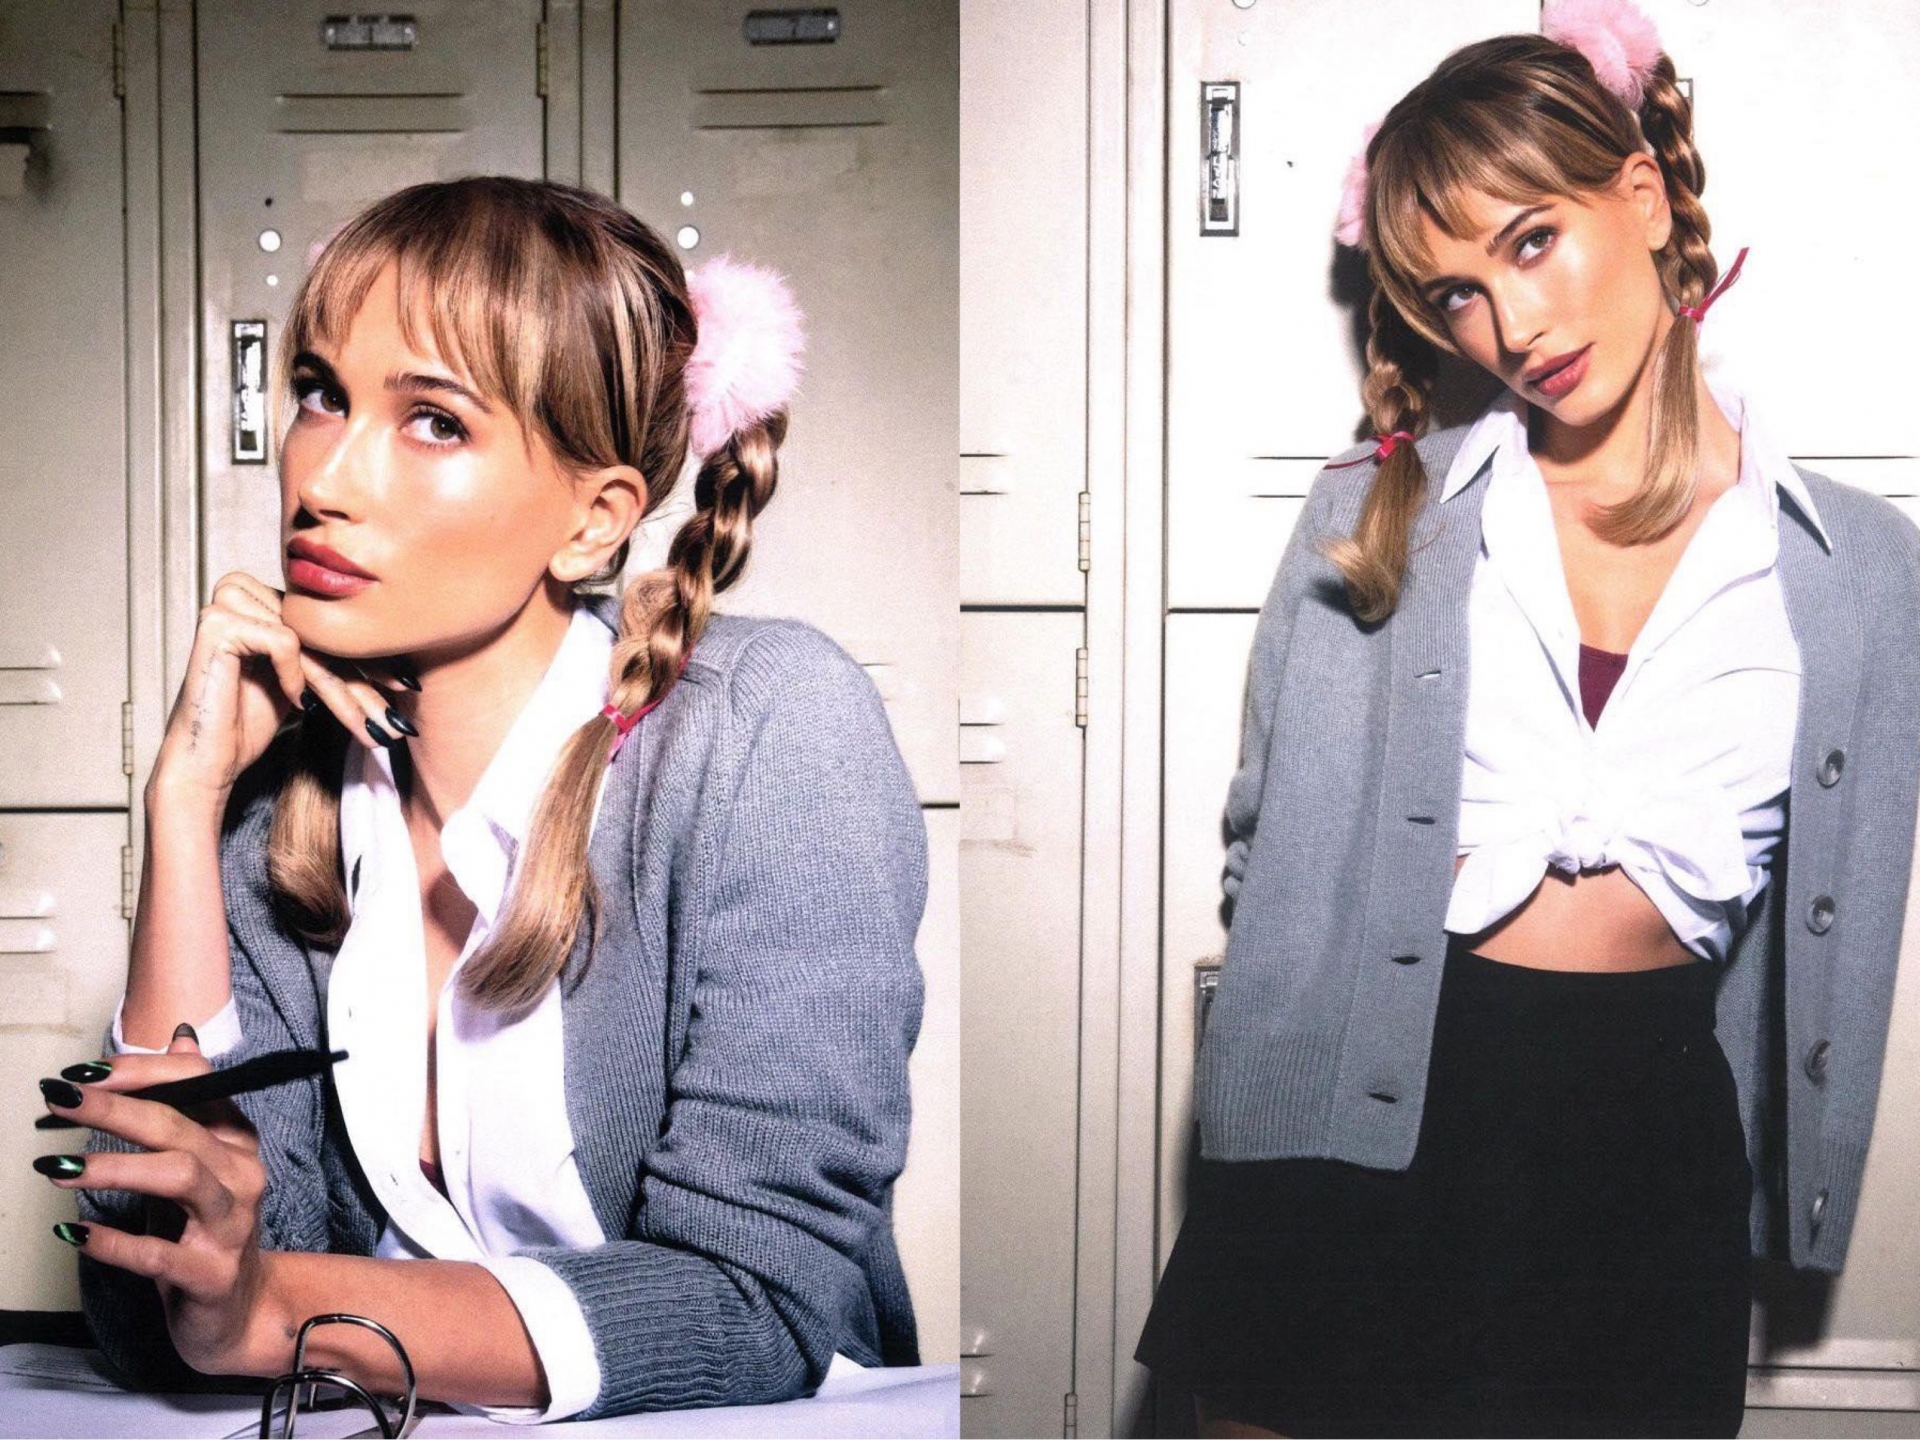 Năm nay, cô nàng Hailey không chỉ là IT girl 'lăng xê' thành công xu hướng thời trang Y2K mà còn tái hiện lại những hình ảnh bất hủ của công chúa nhạc pop Britney Spears. 